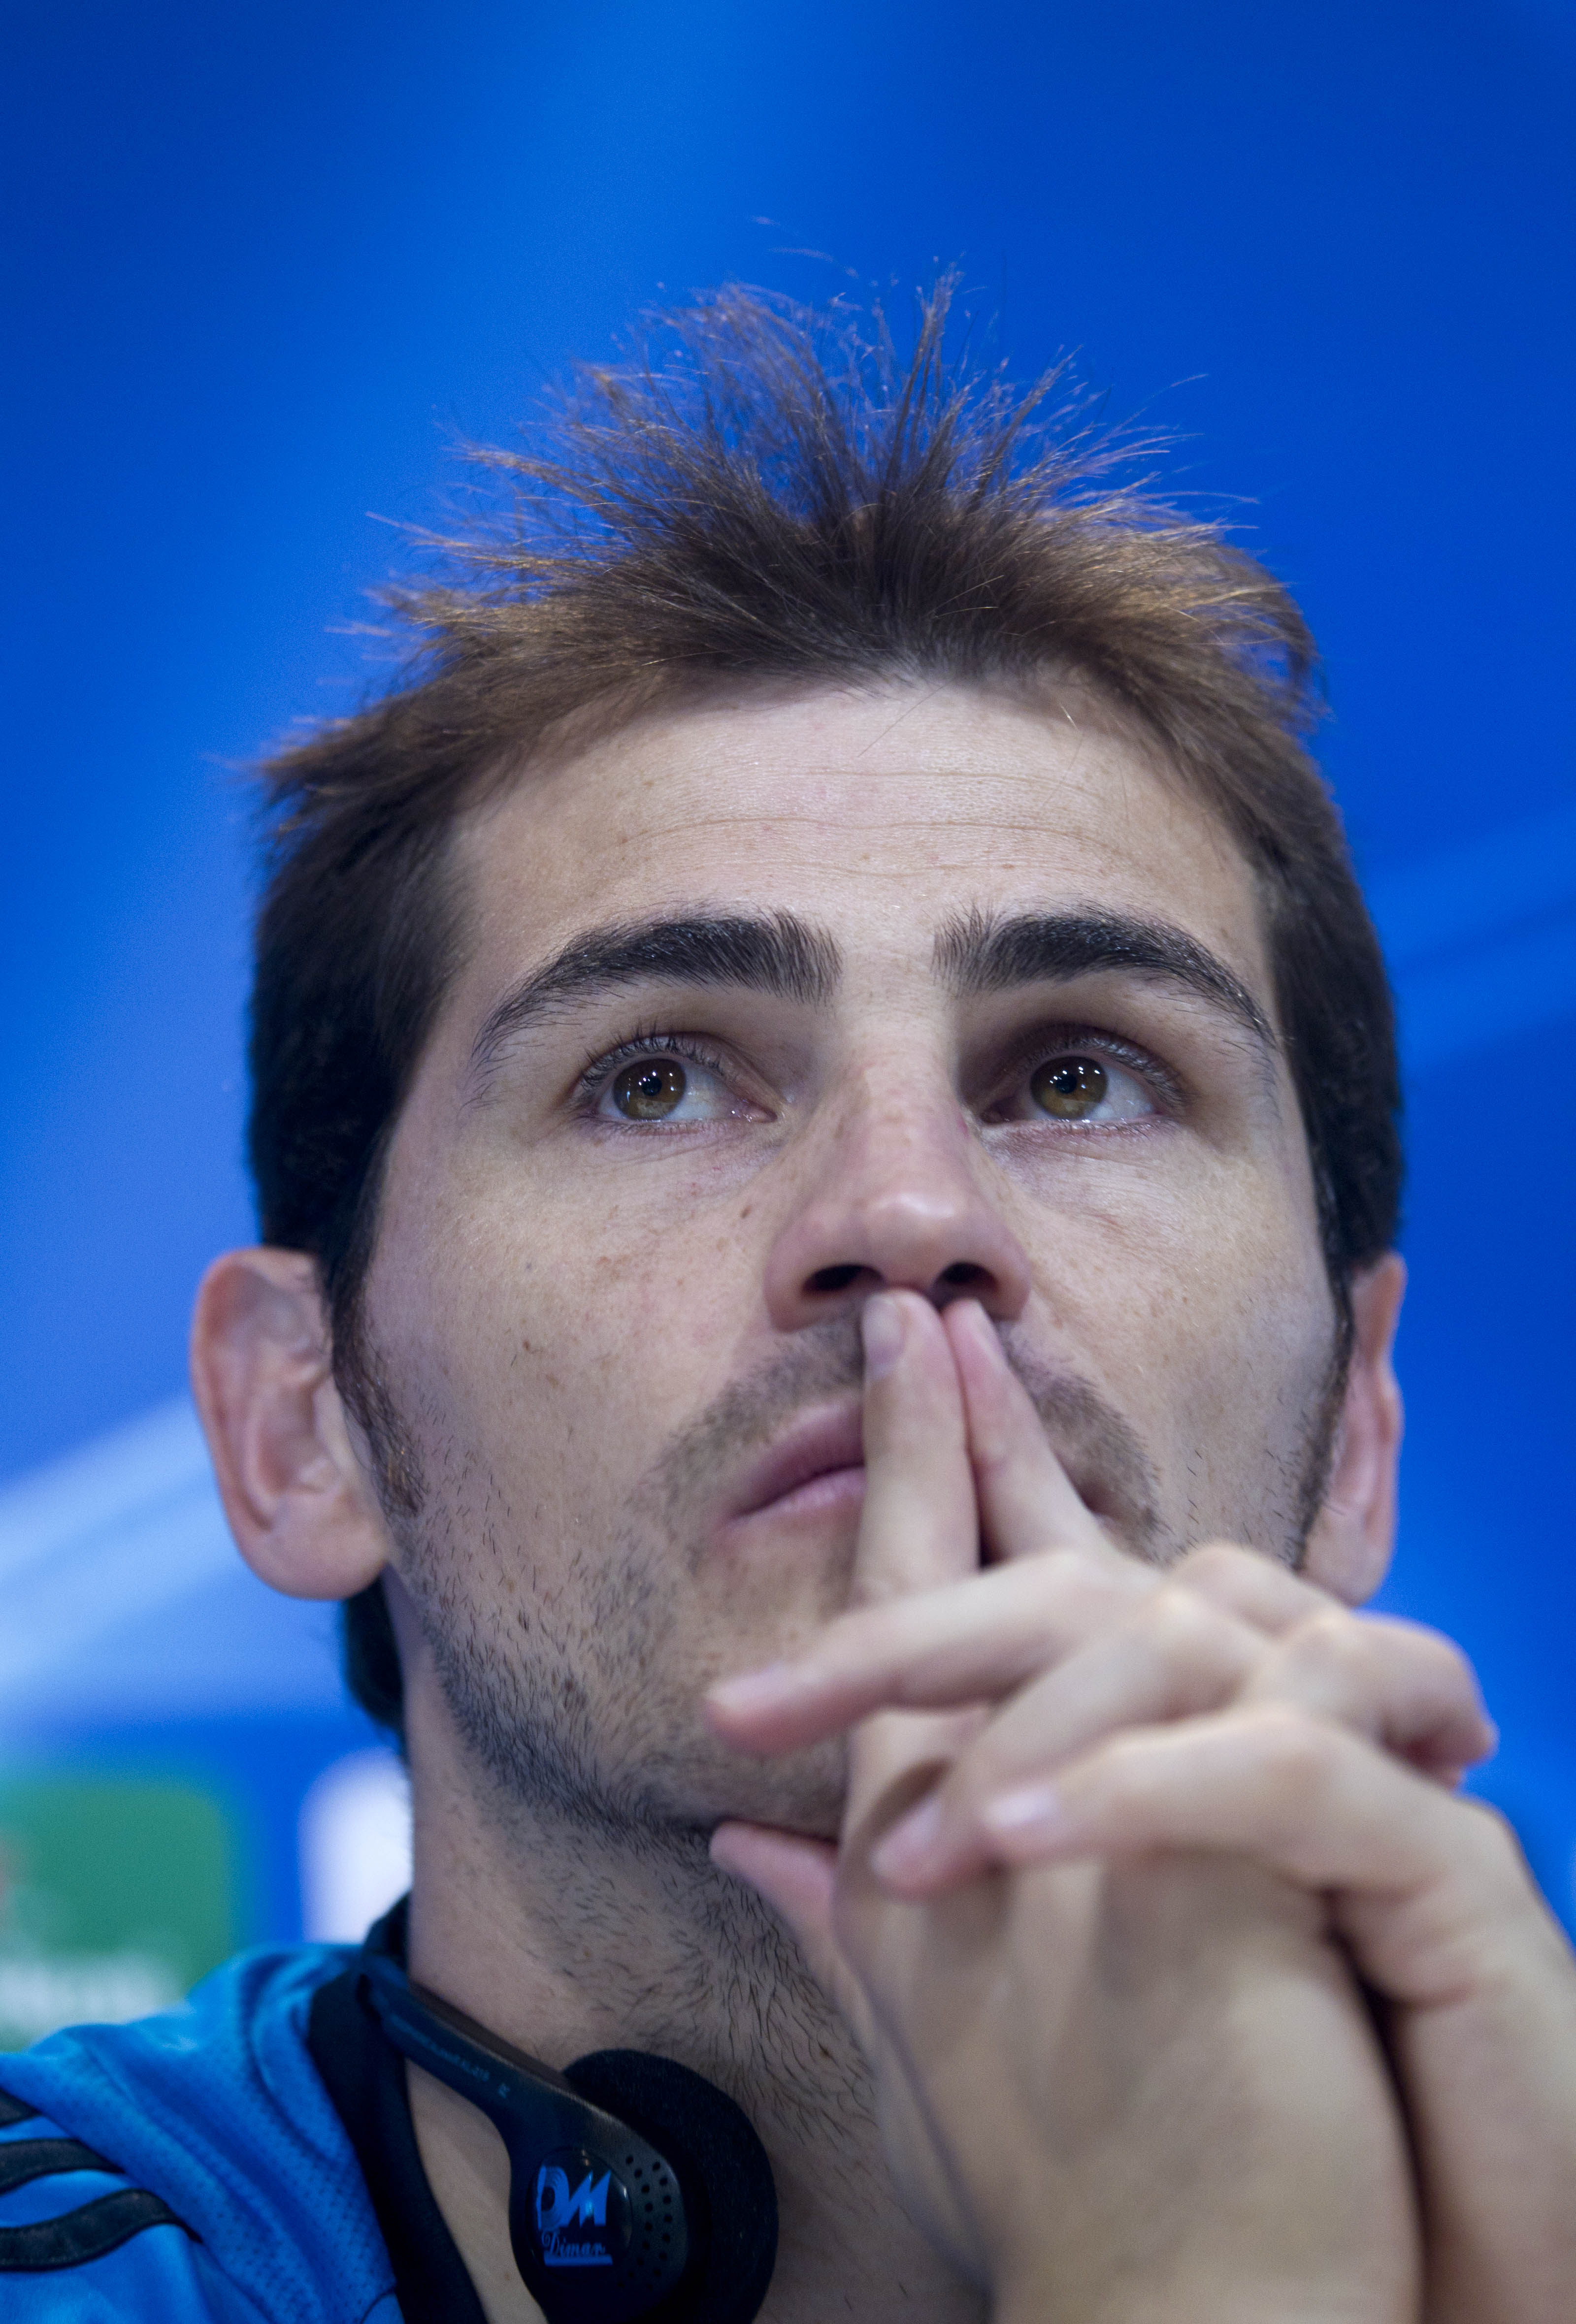 Iker Casillas firade inte Real Madrids mål I Champions League förra veckan för att hedra en vän till honom som gått bort.